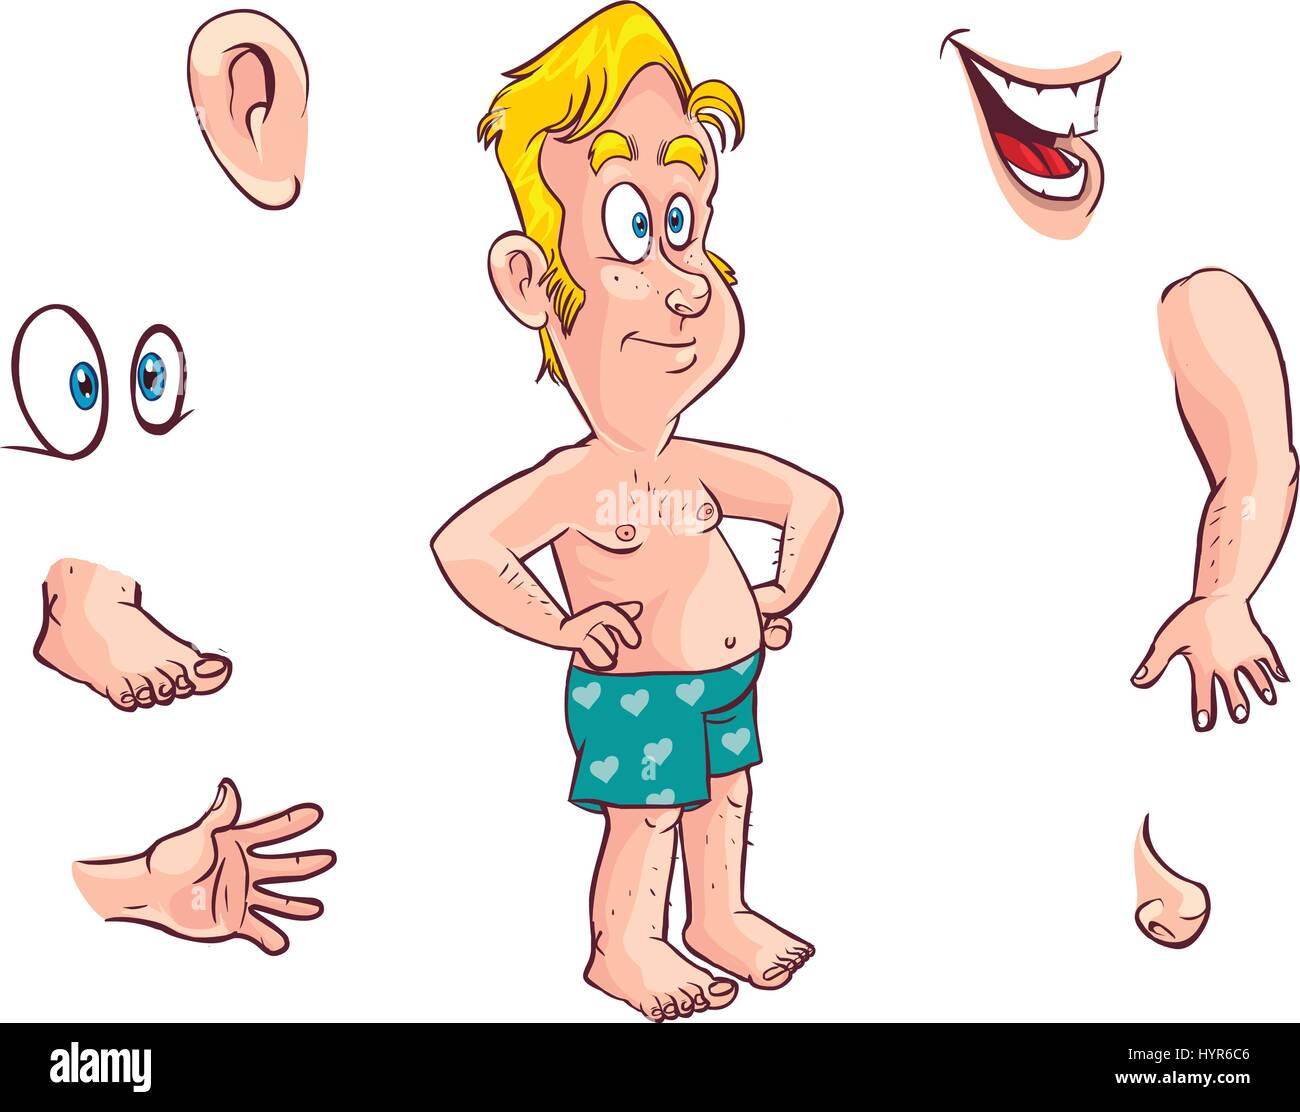 Vektor-Illustration von einem Cartoon Kid und Körperteilen Stock Vektor